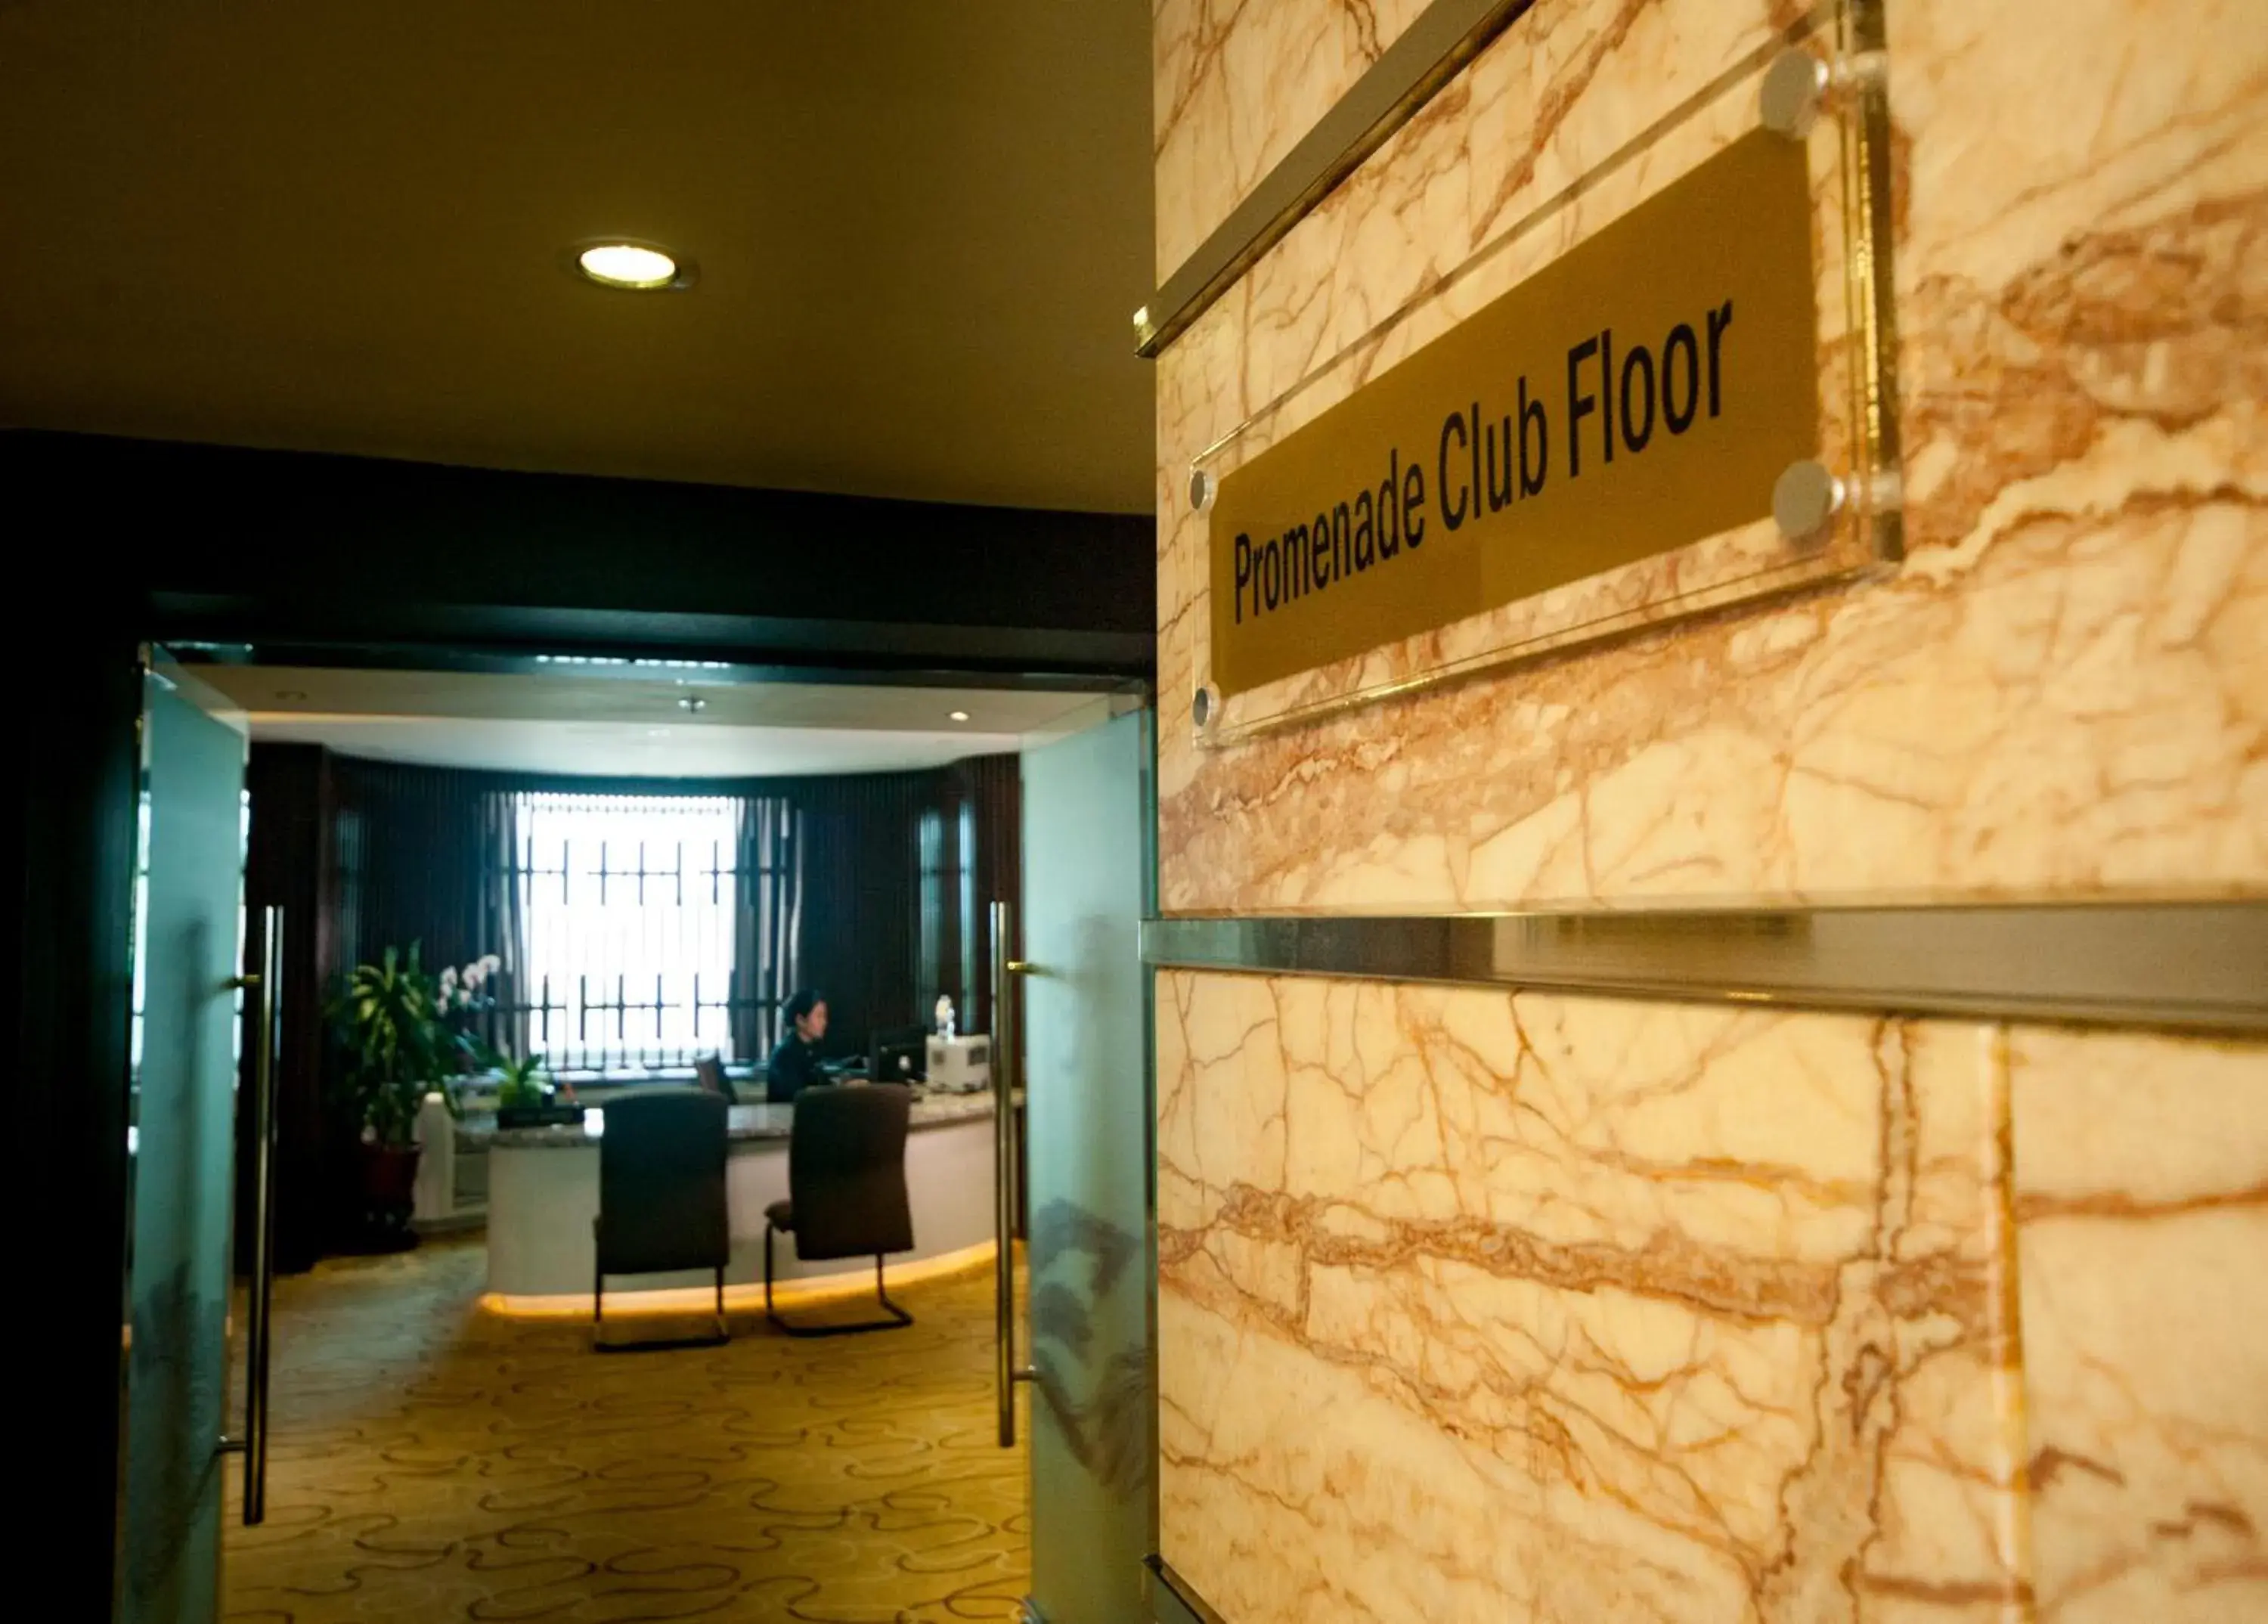 Lobby or reception in Promenade Hotel Kota Kinabalu